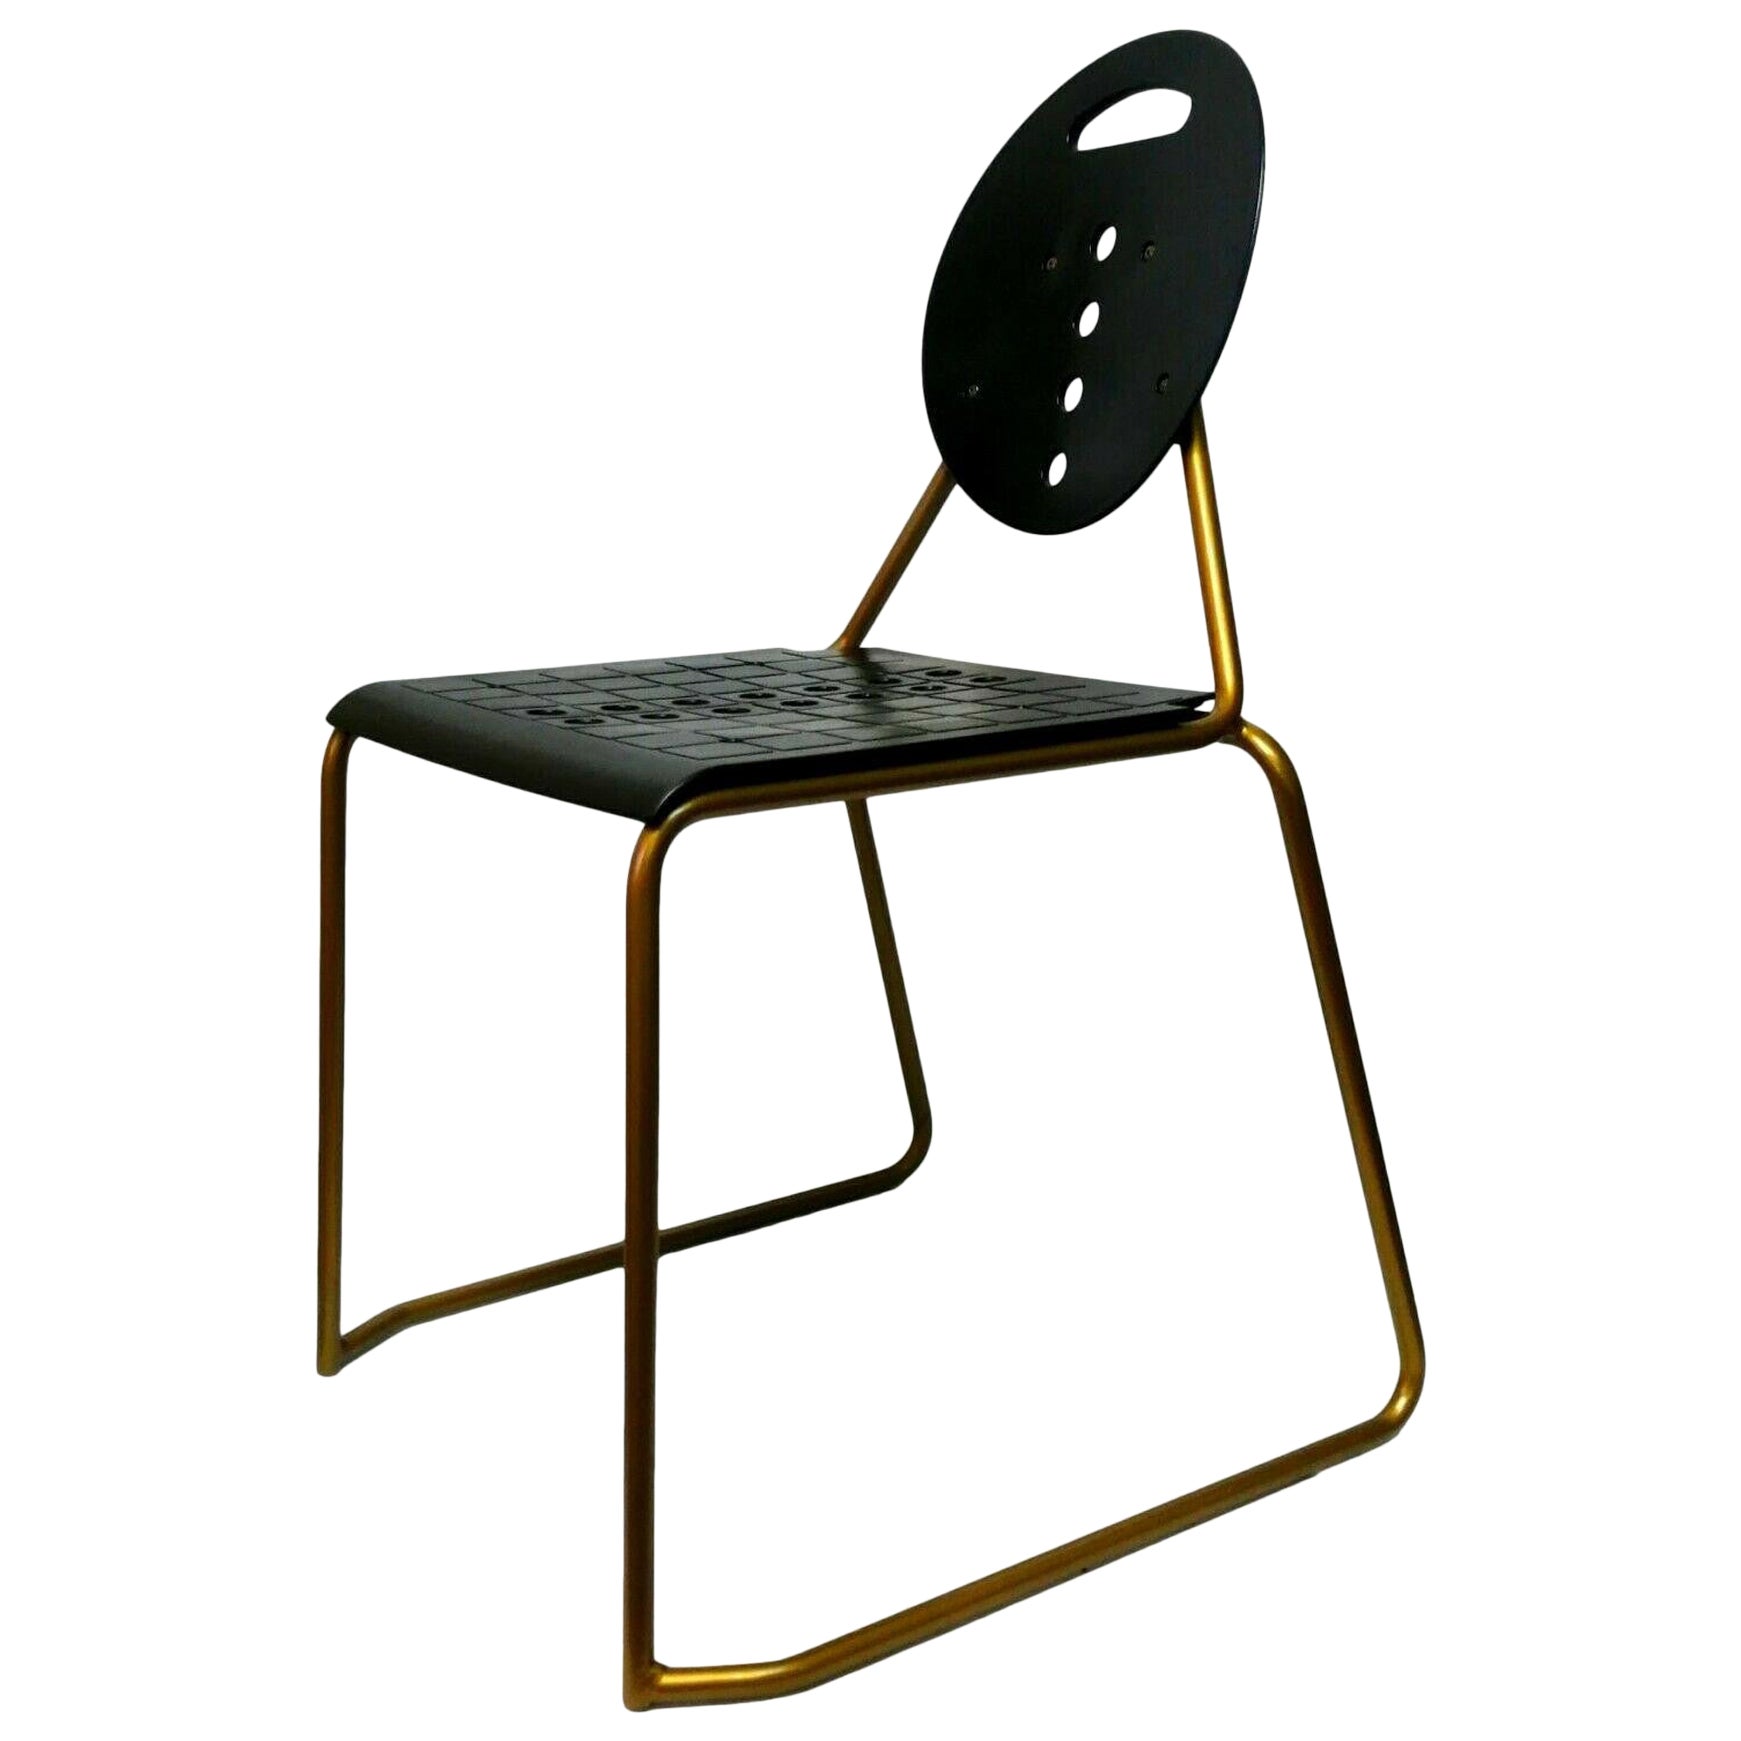 Collectible Chair "Charlie" Design Carlo Bimbi & Milo Gioacchini for Segis, 1975